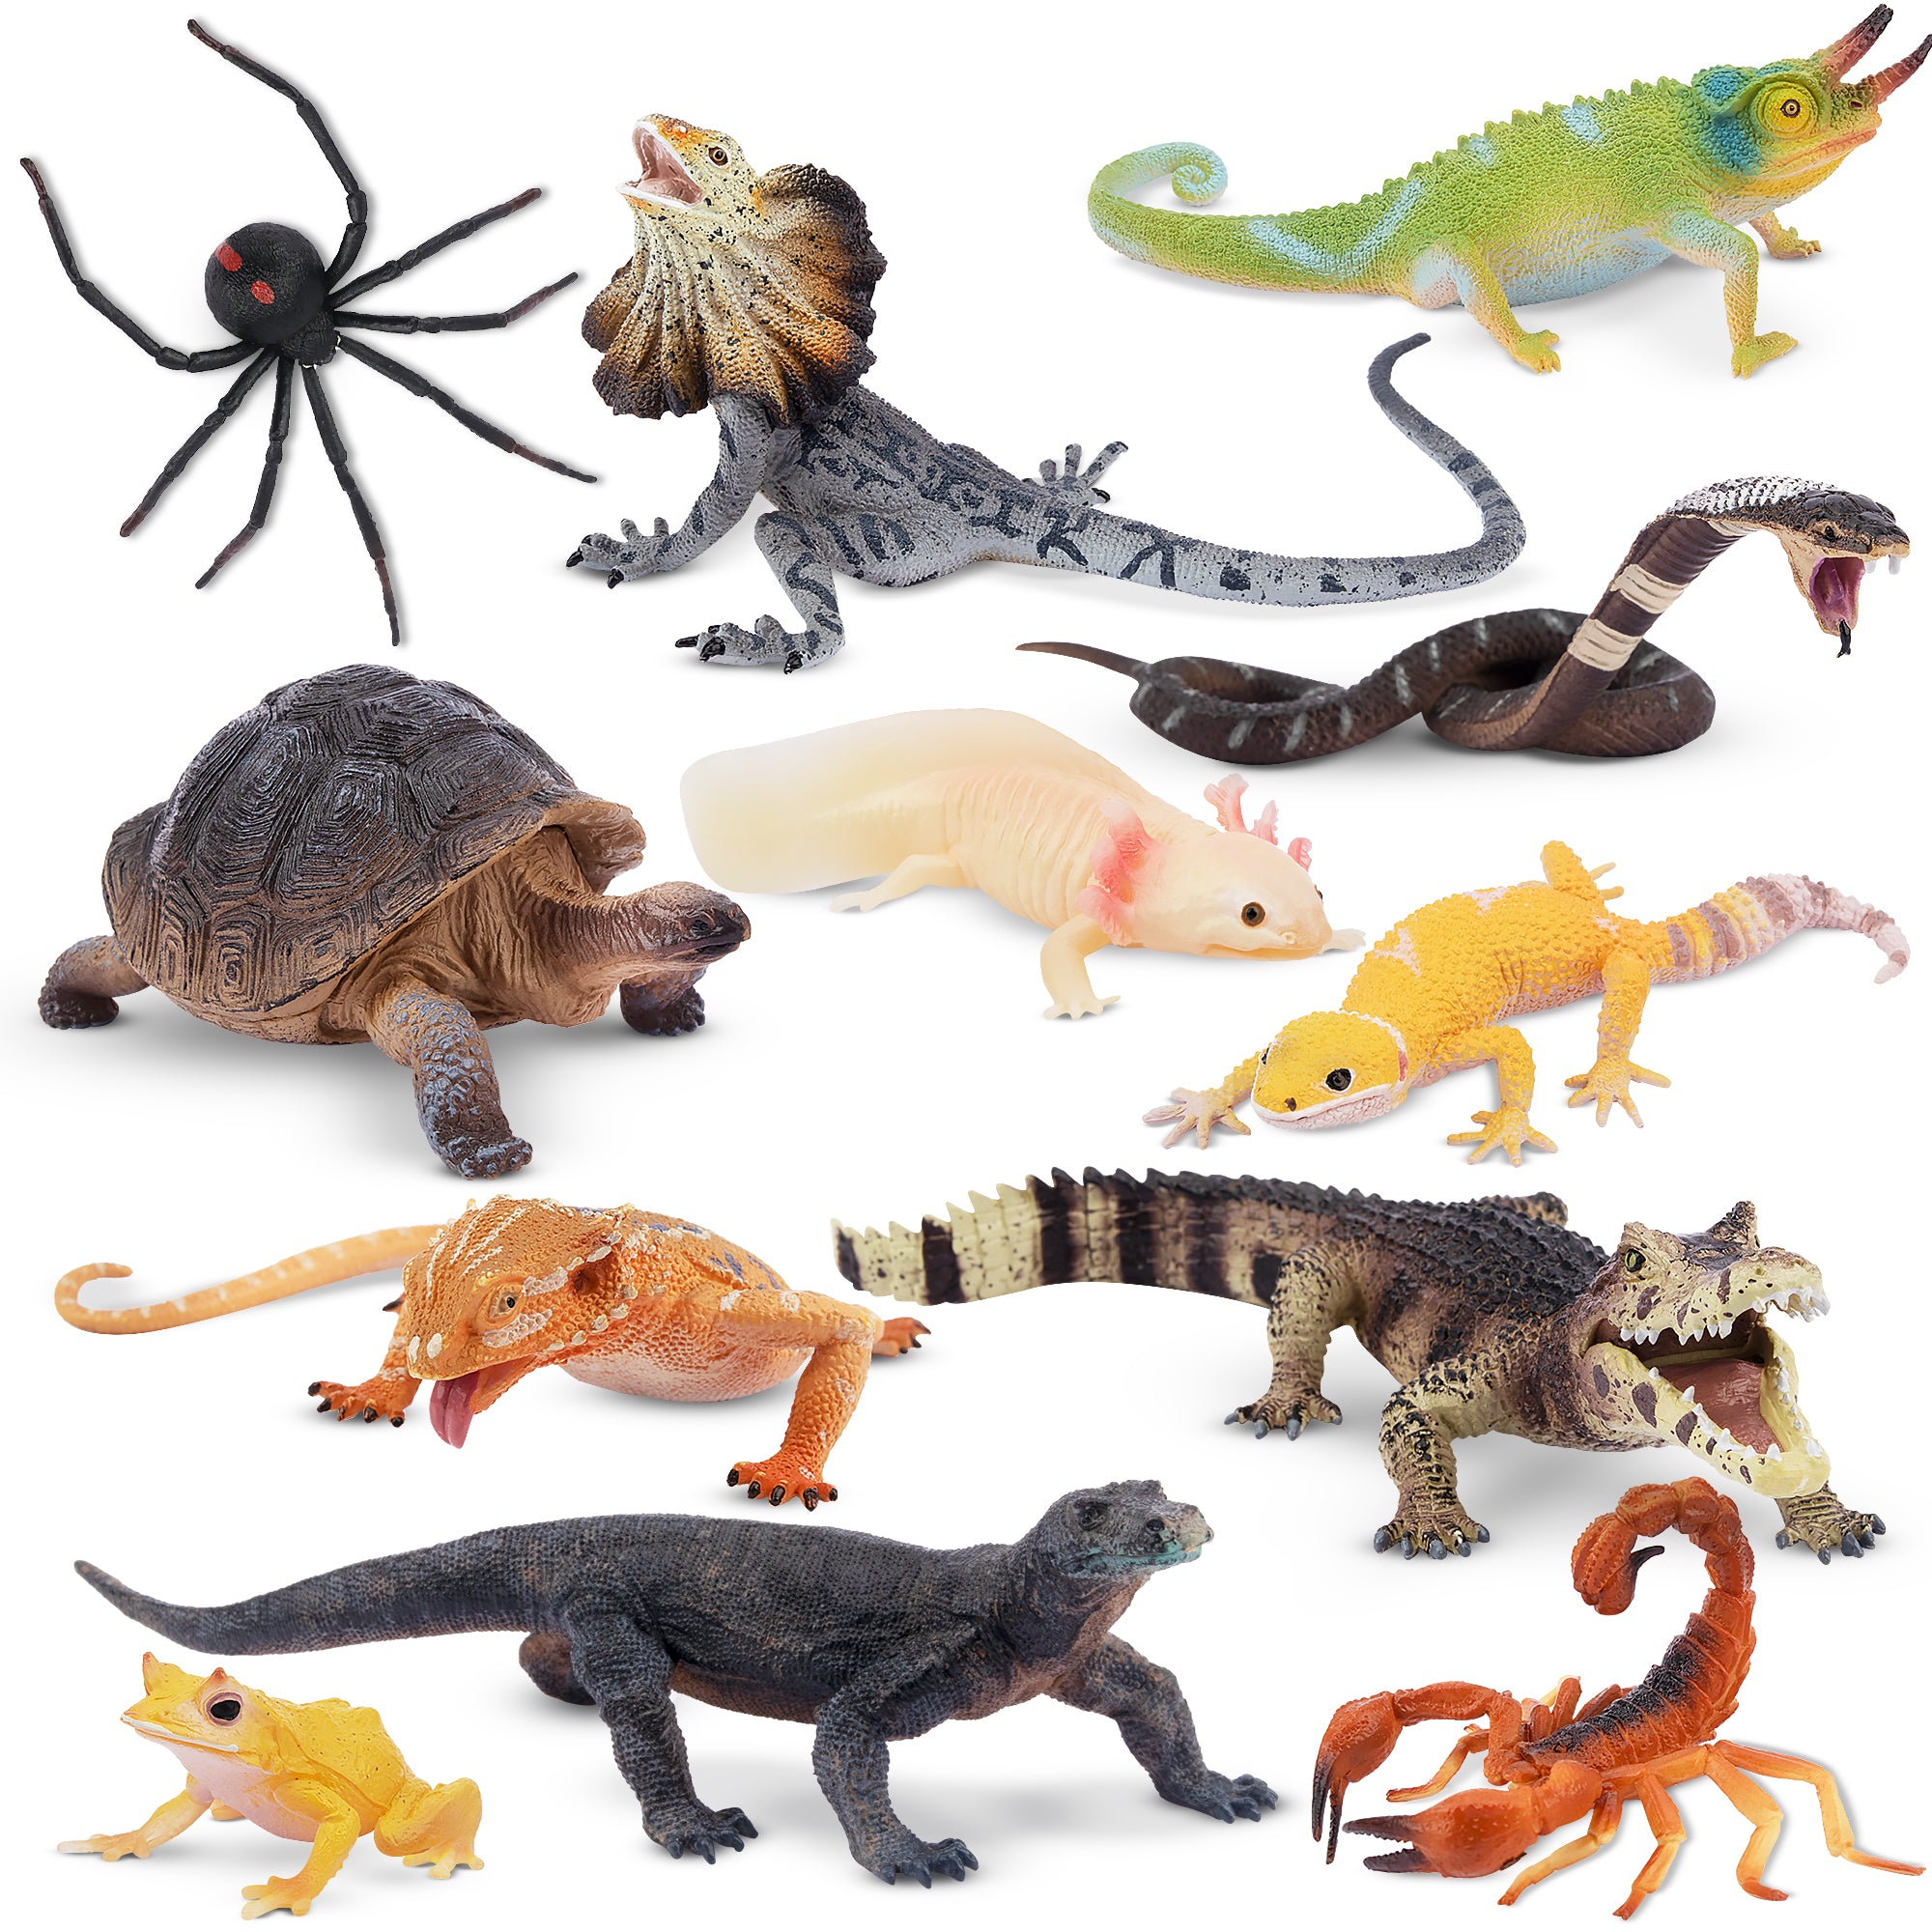 12-Piece Reptile Animal Variety Figurines Playset